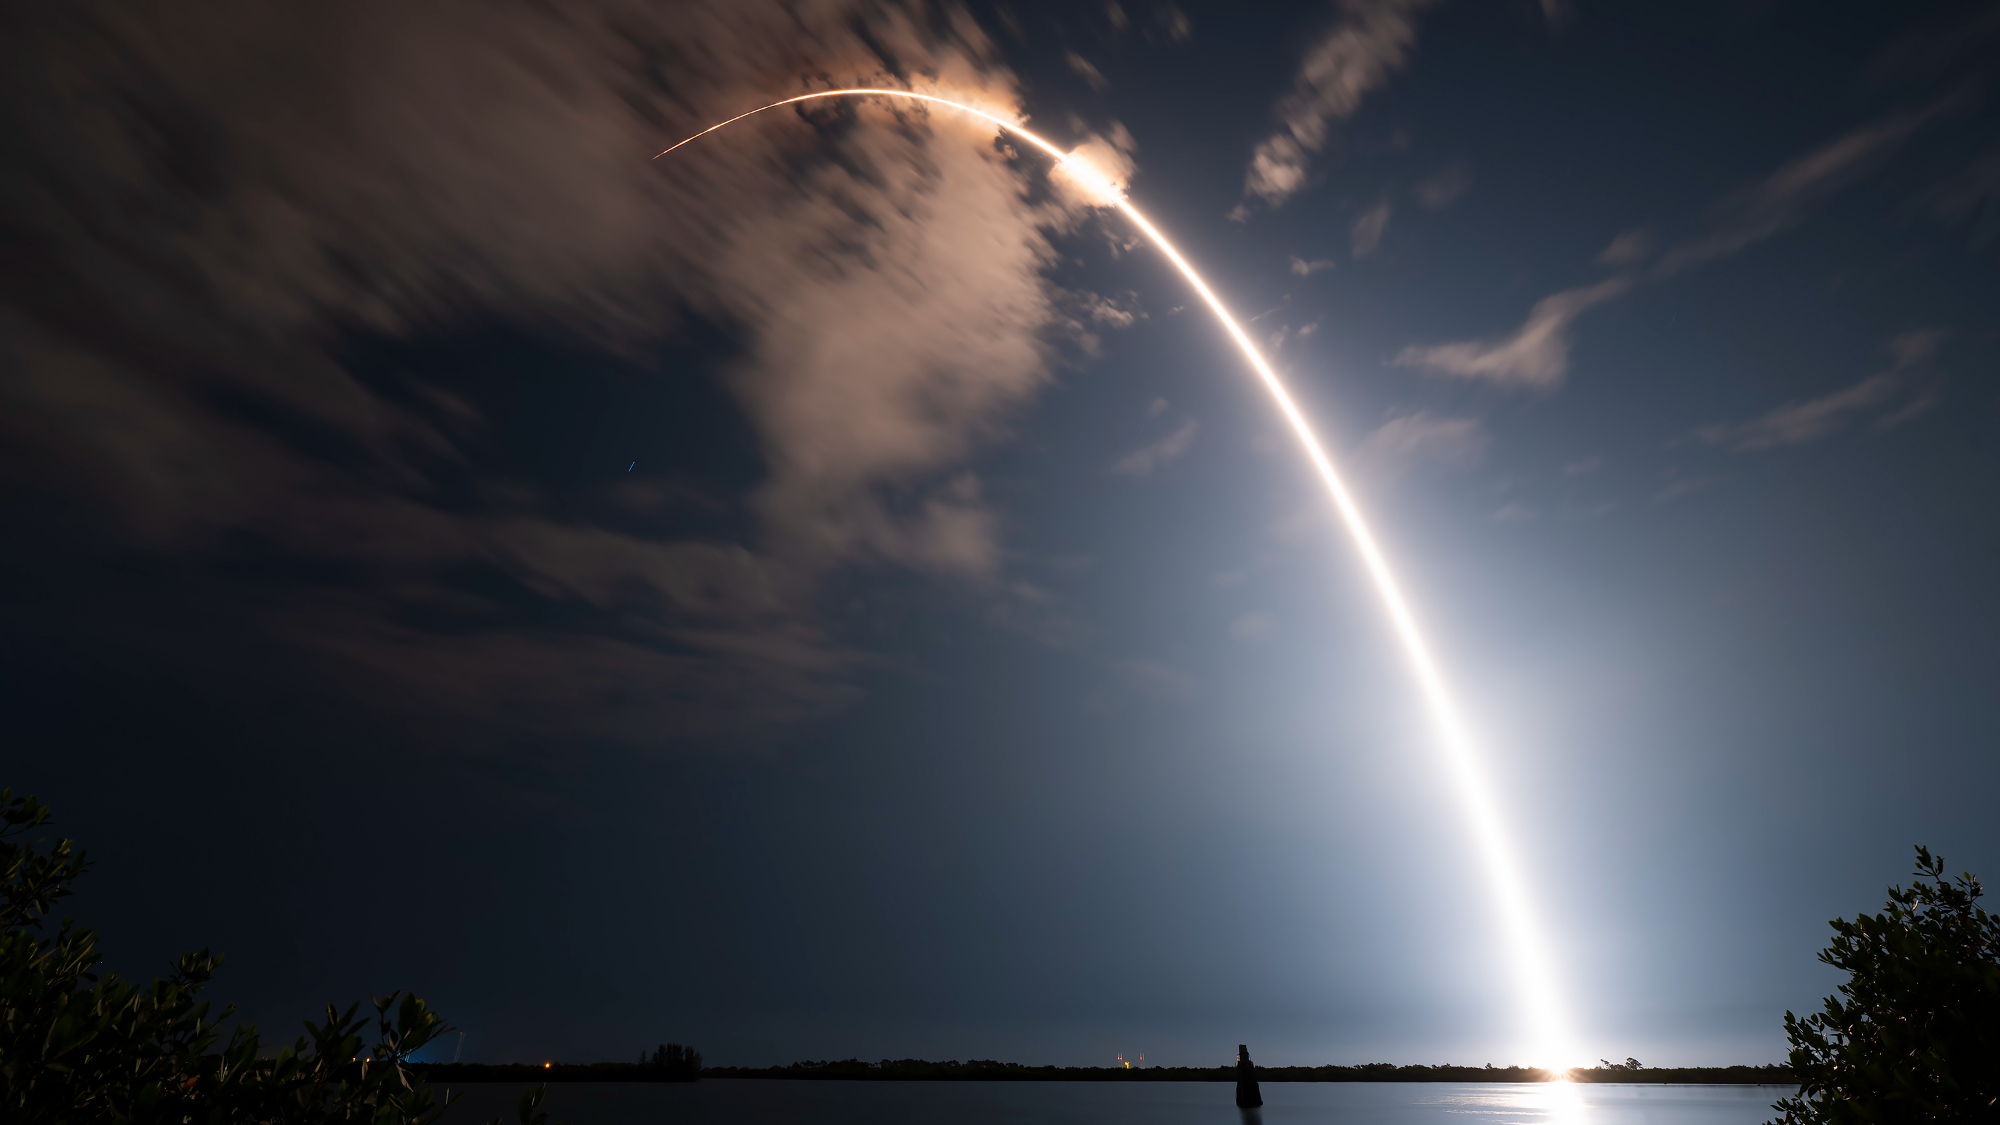 Un lancement de fusée coupe un arc orange dans le ciel nocturne sombre sur cette image à exposition longue.